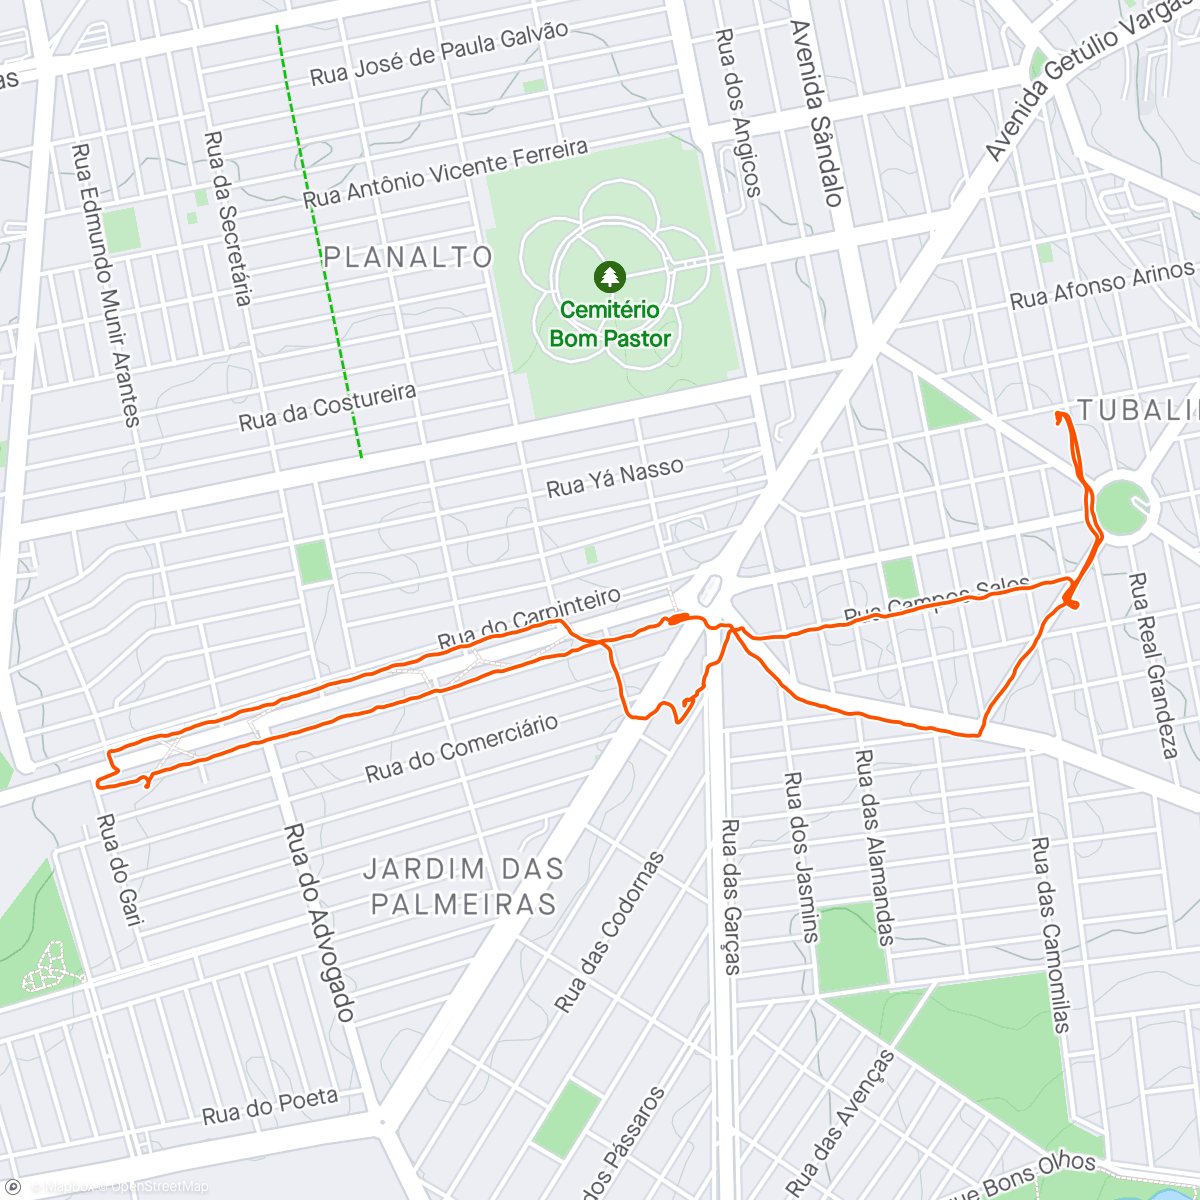 「ATV. FIS. 116/2.023
Caminhando pelo bairro 
6 kms c/

@kyraa_labrador」活動的地圖